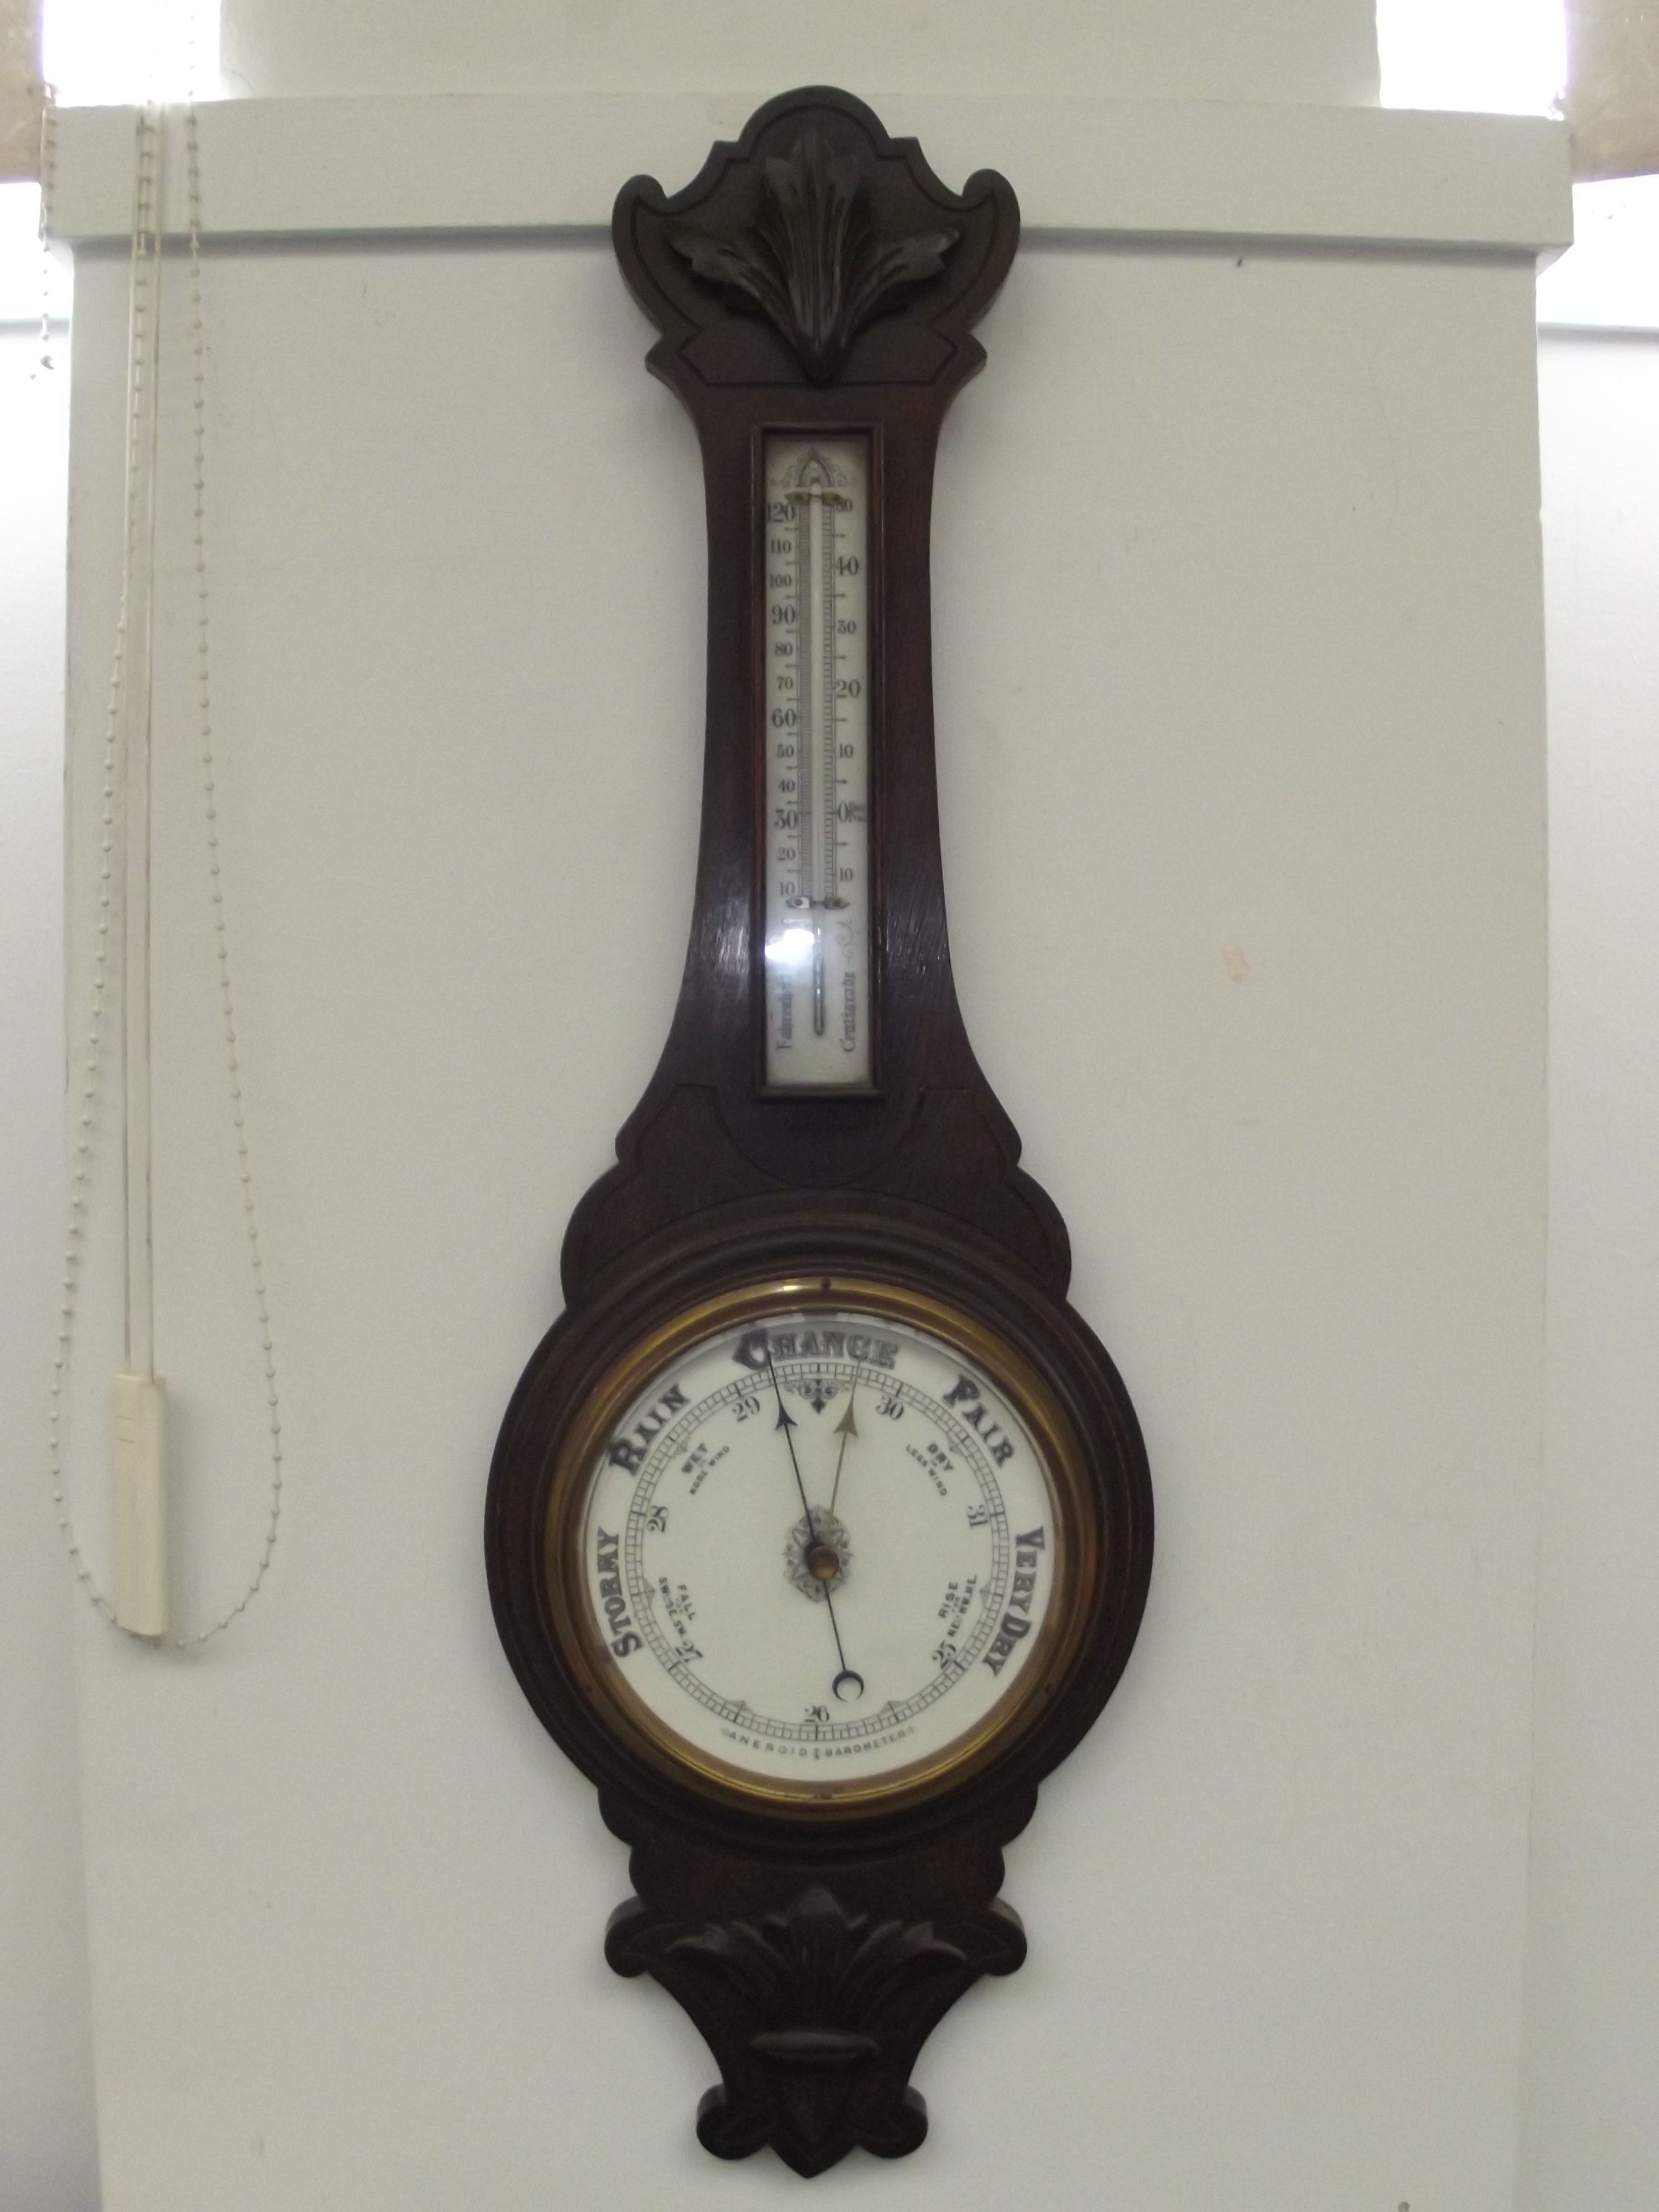 A banjo barometer 35 inches long